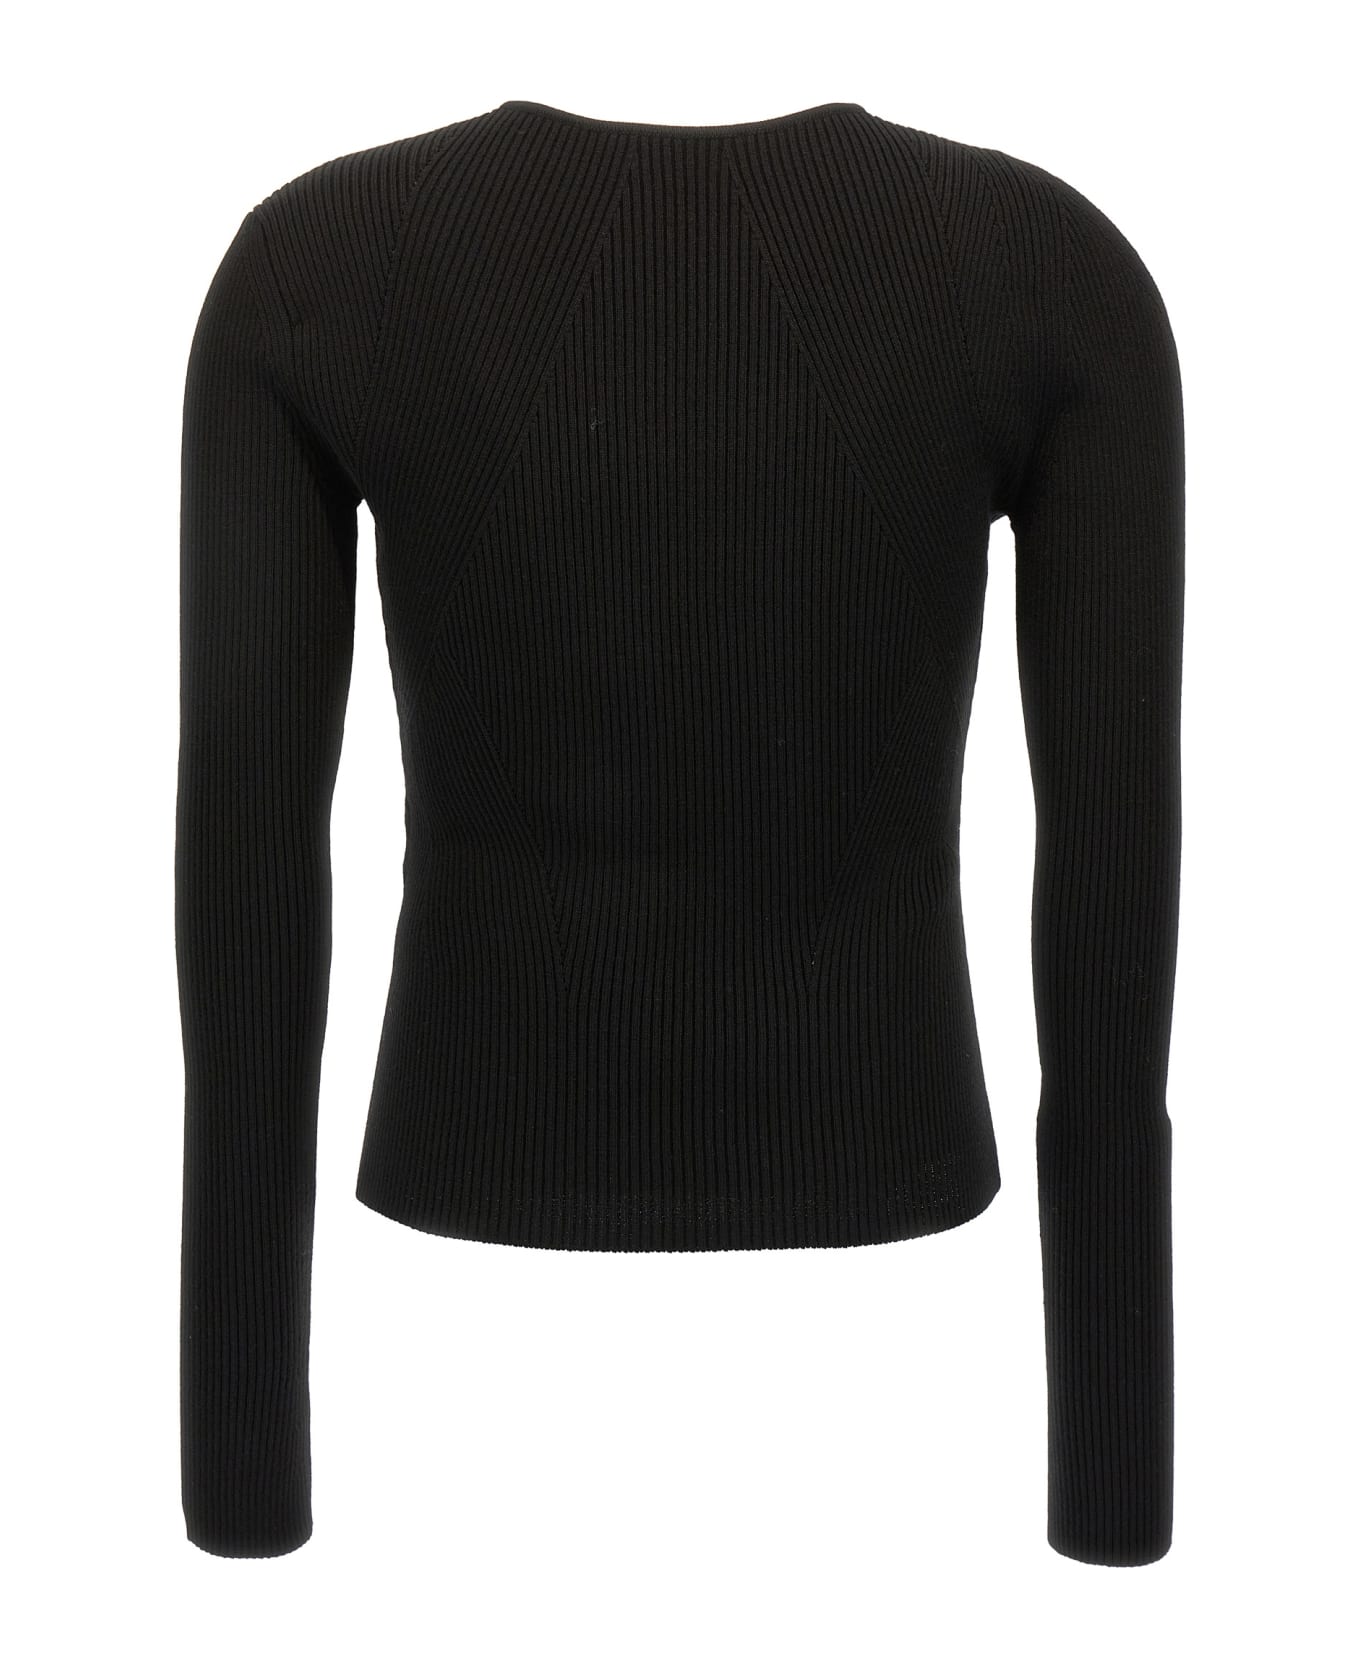 Alexander McQueen Cut-out Sweater - Black  